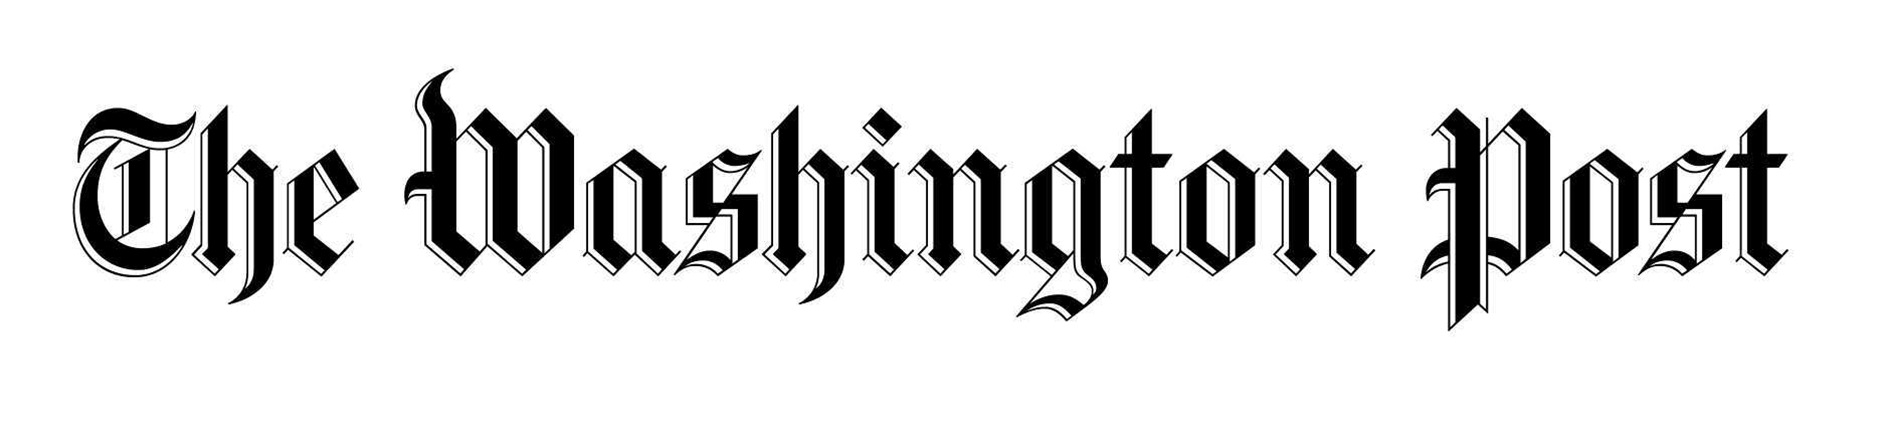 Î‘Ï€Î¿Ï„Î­Î»ÎµÏƒÎ¼Î± ÎµÎ¹ÎºÏŒÎ½Î±Ï‚ Î³Î¹Î± washington post logo